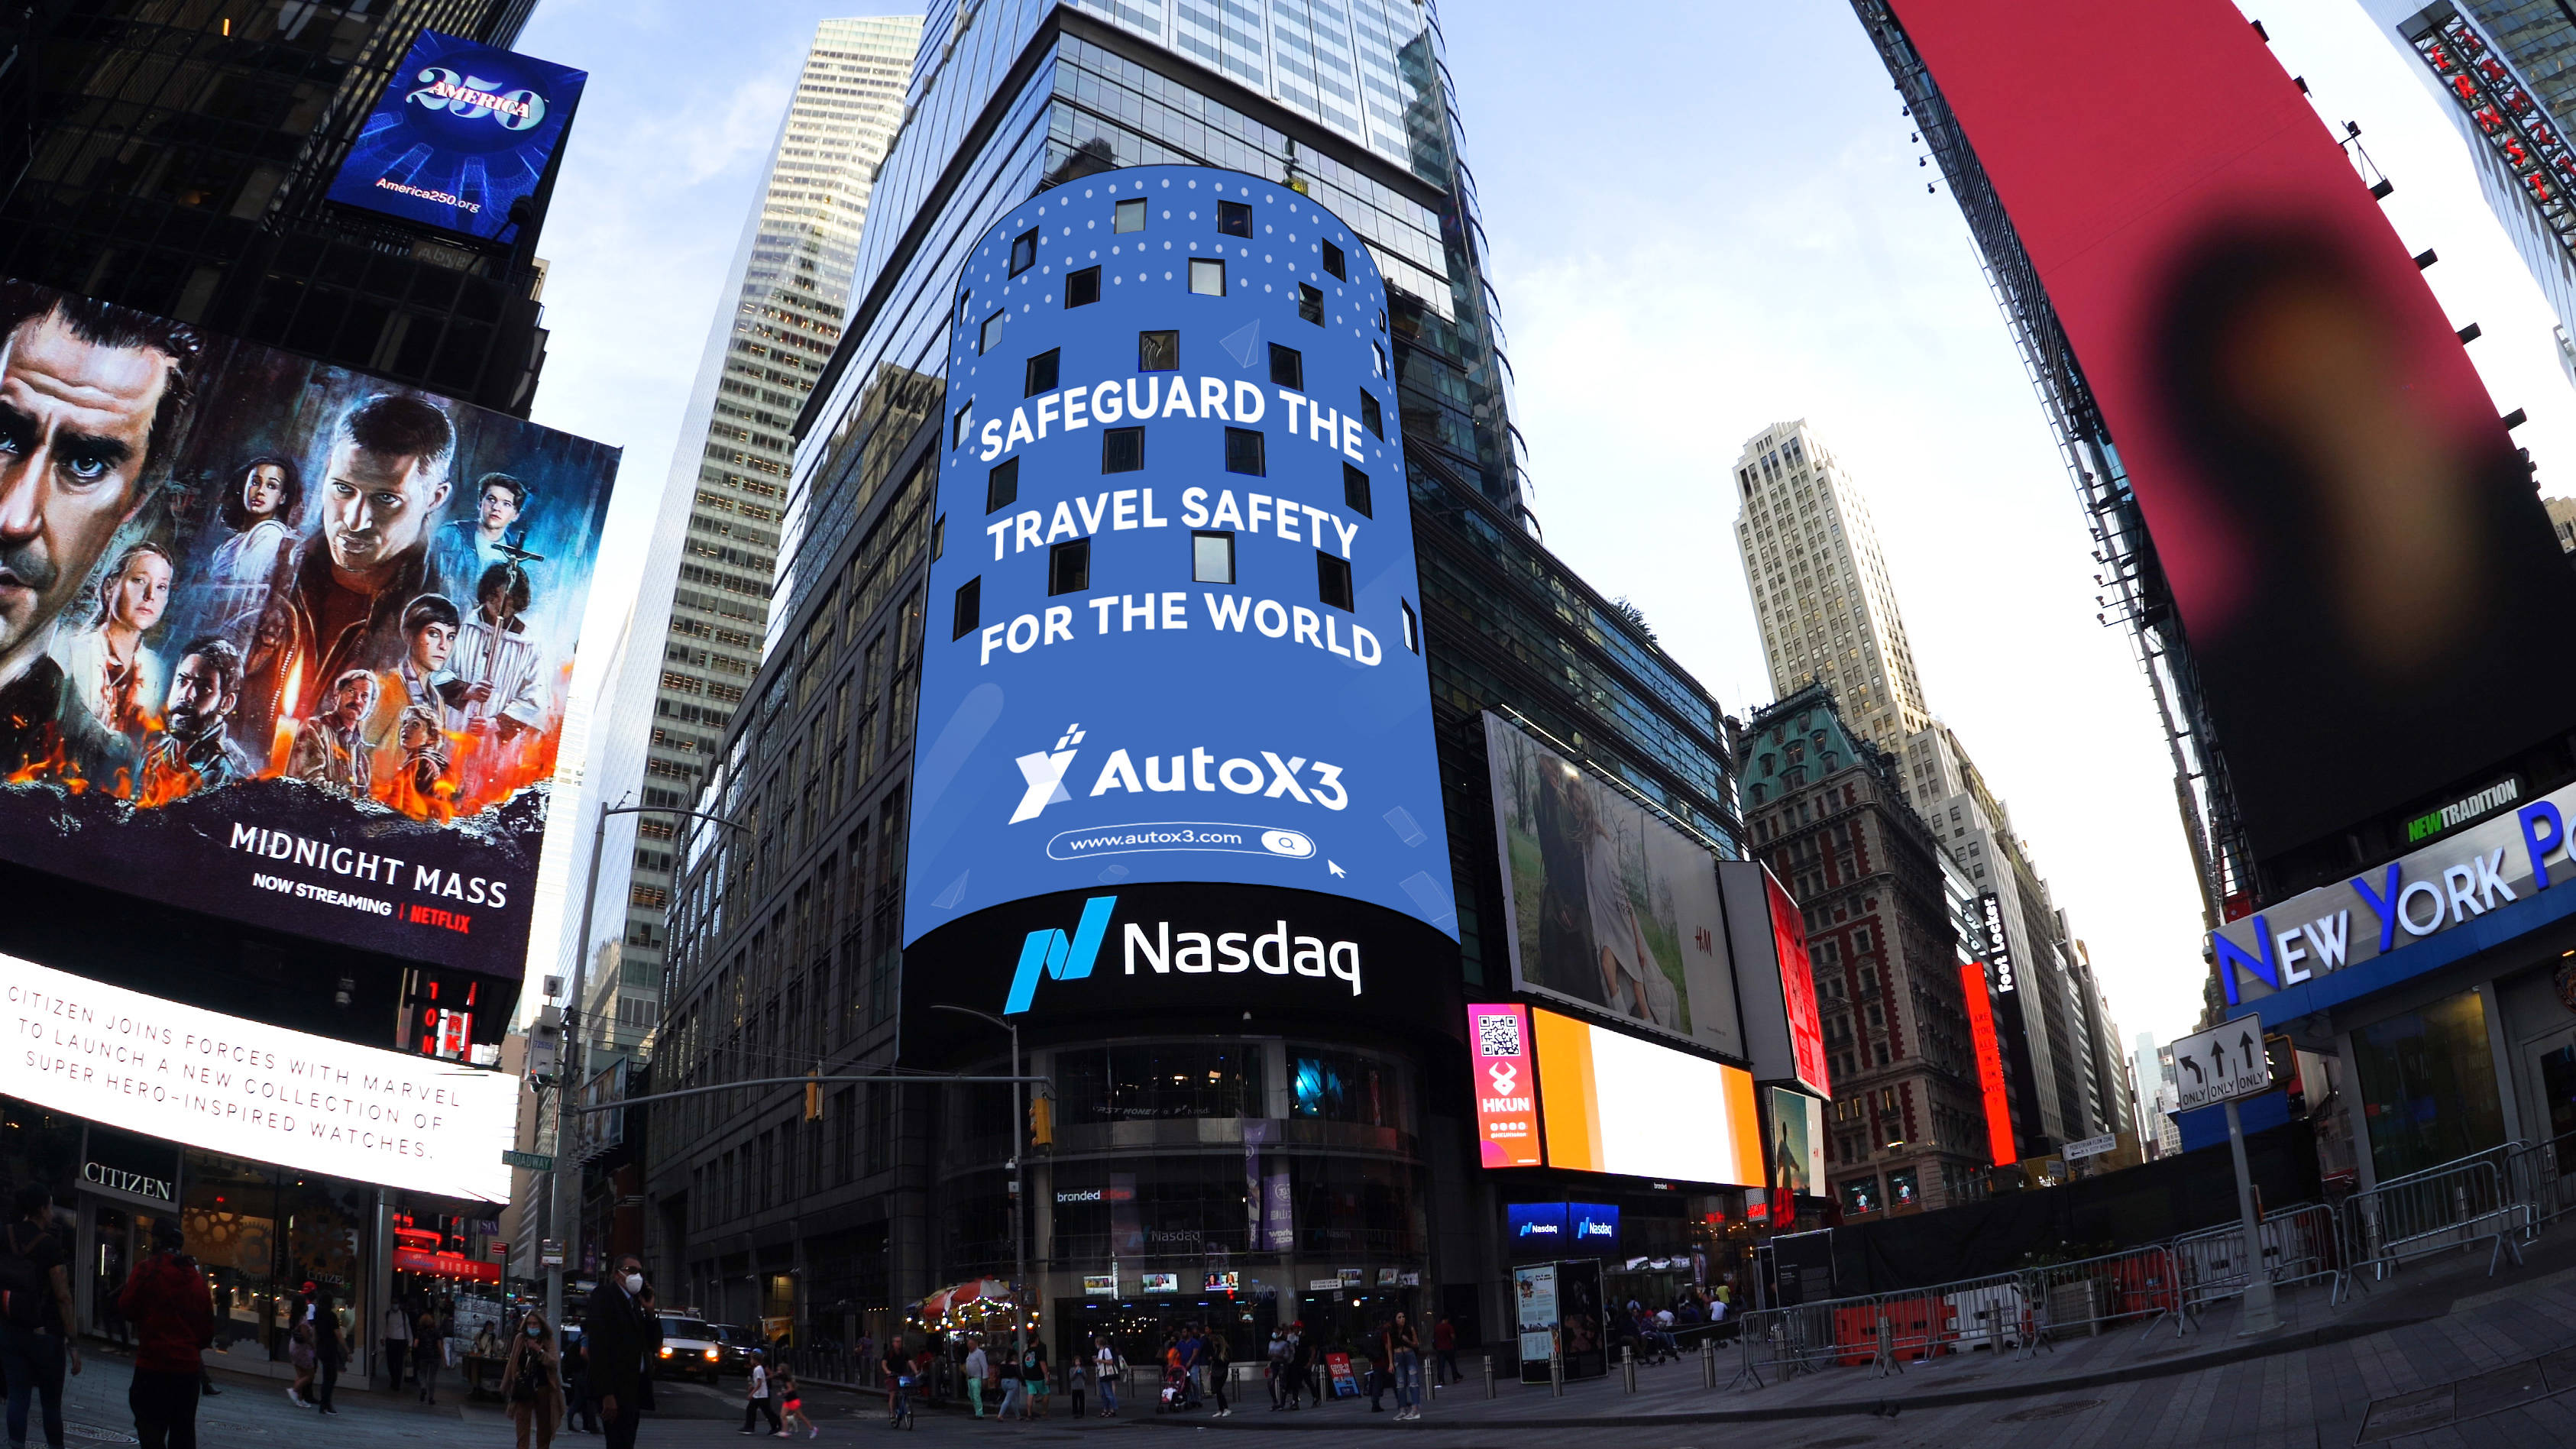 autox3受邀登陆美国纳斯达克巨幅屏在世界前沿为祖国庆生